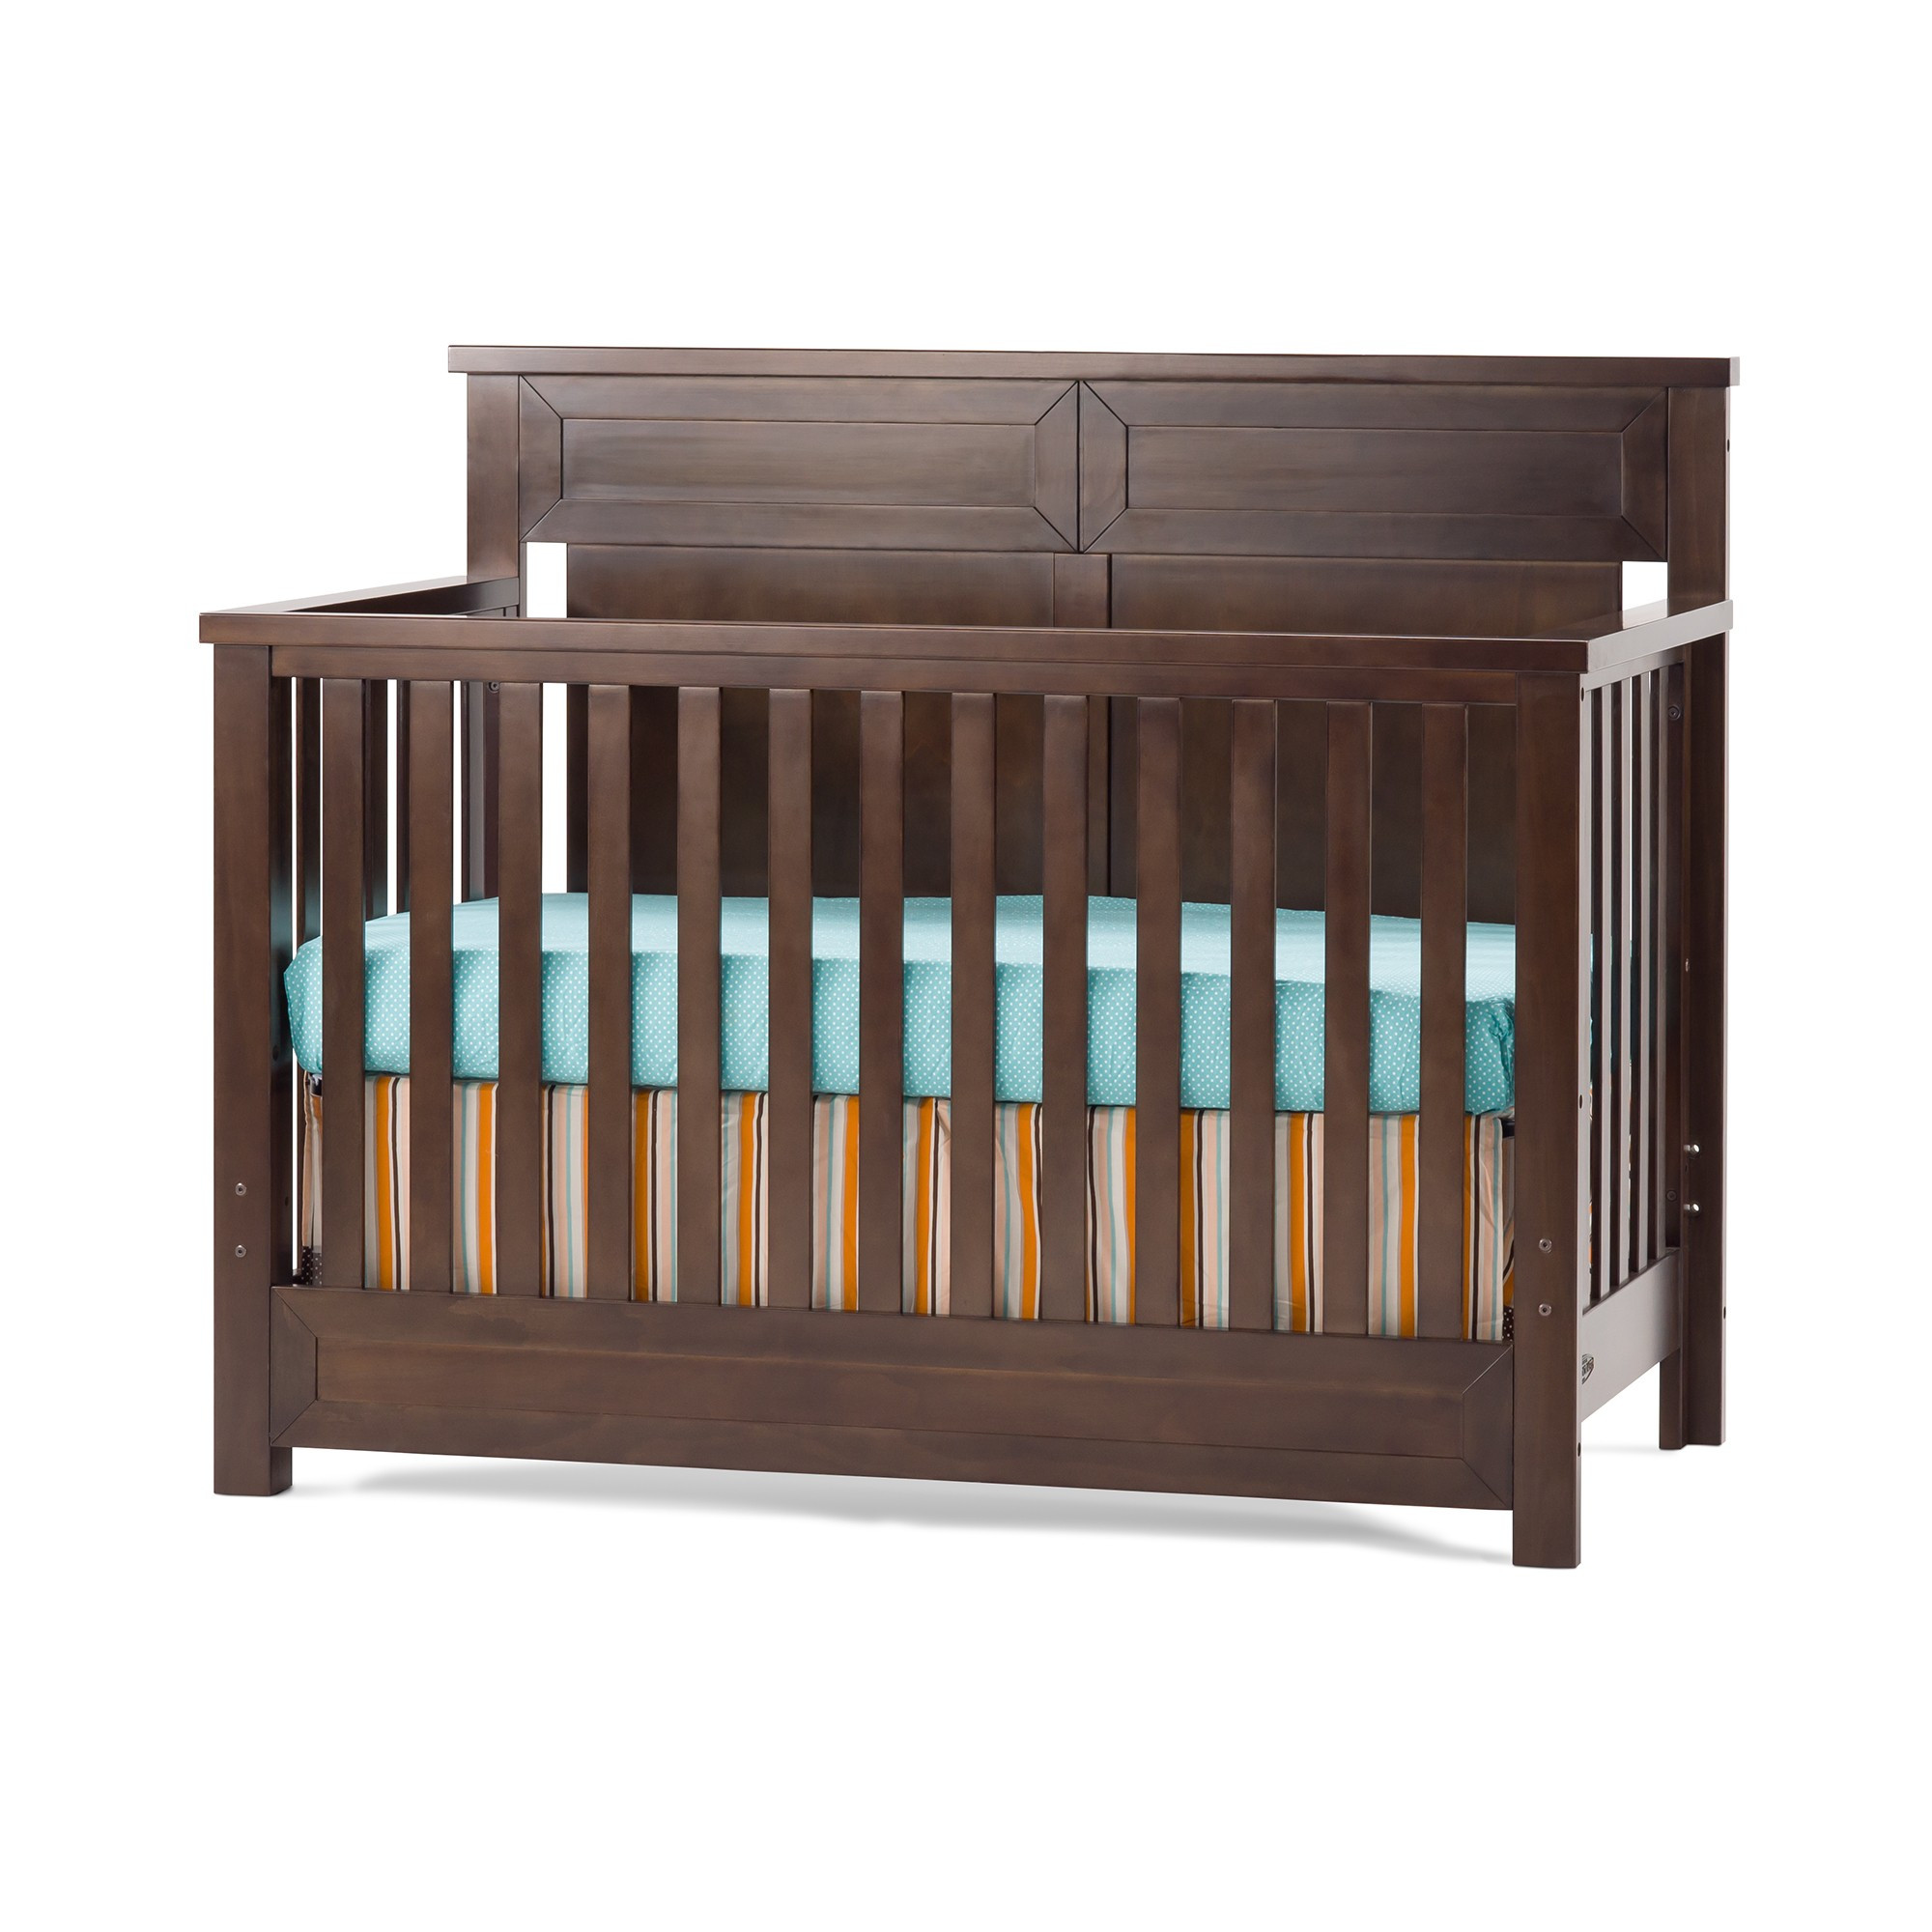 Child Craft Redmond Crib
 Abbott 4 in 1 Convertible Crib